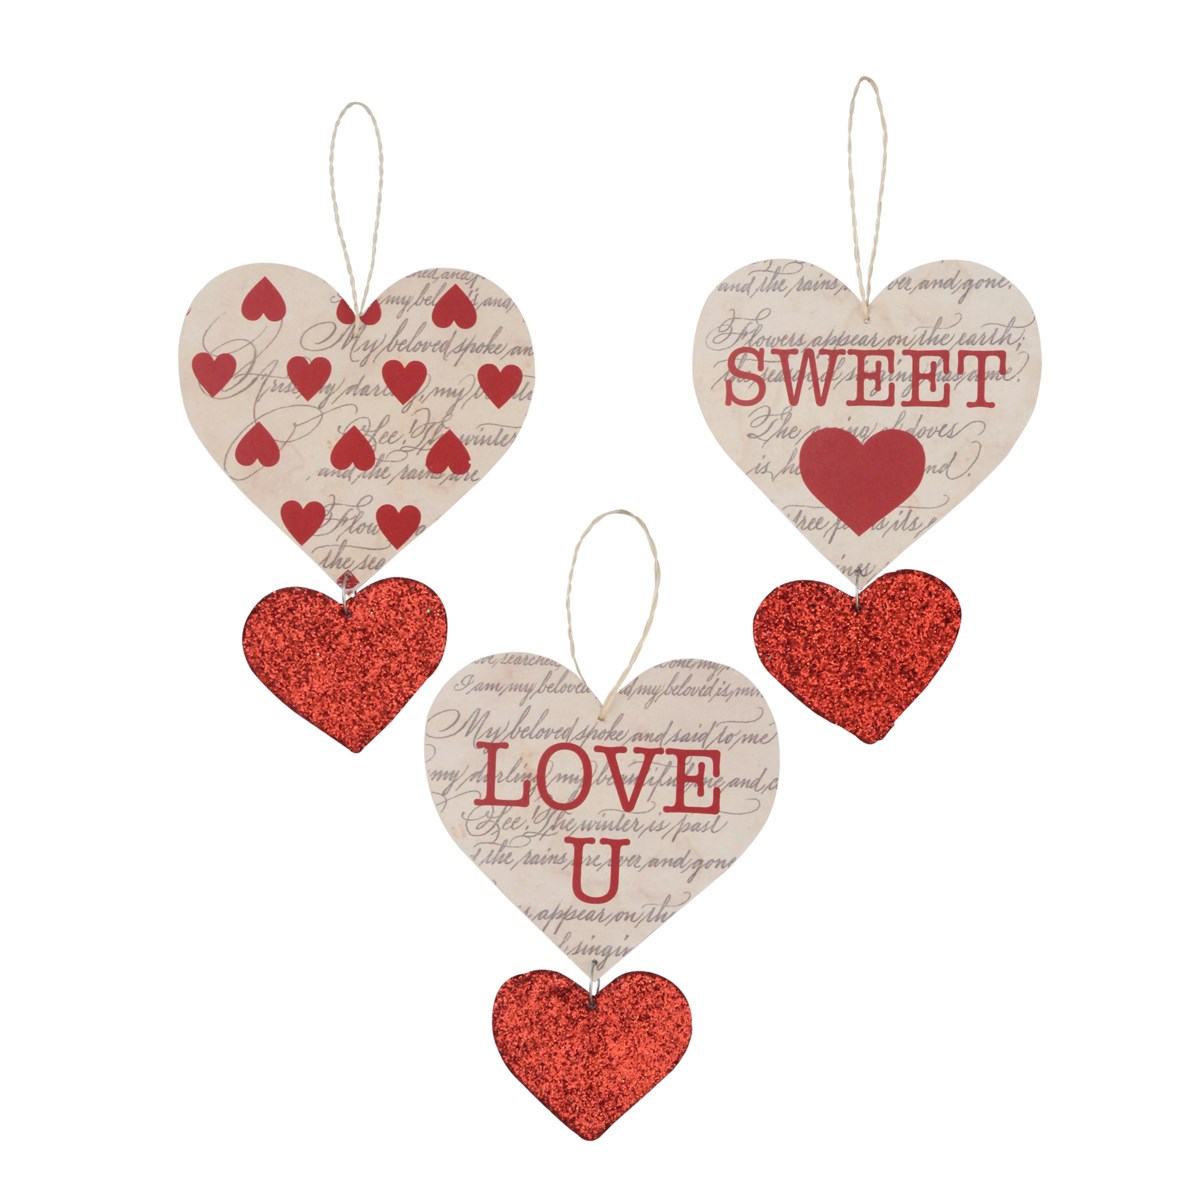 Love Letter Heart Ornament S3